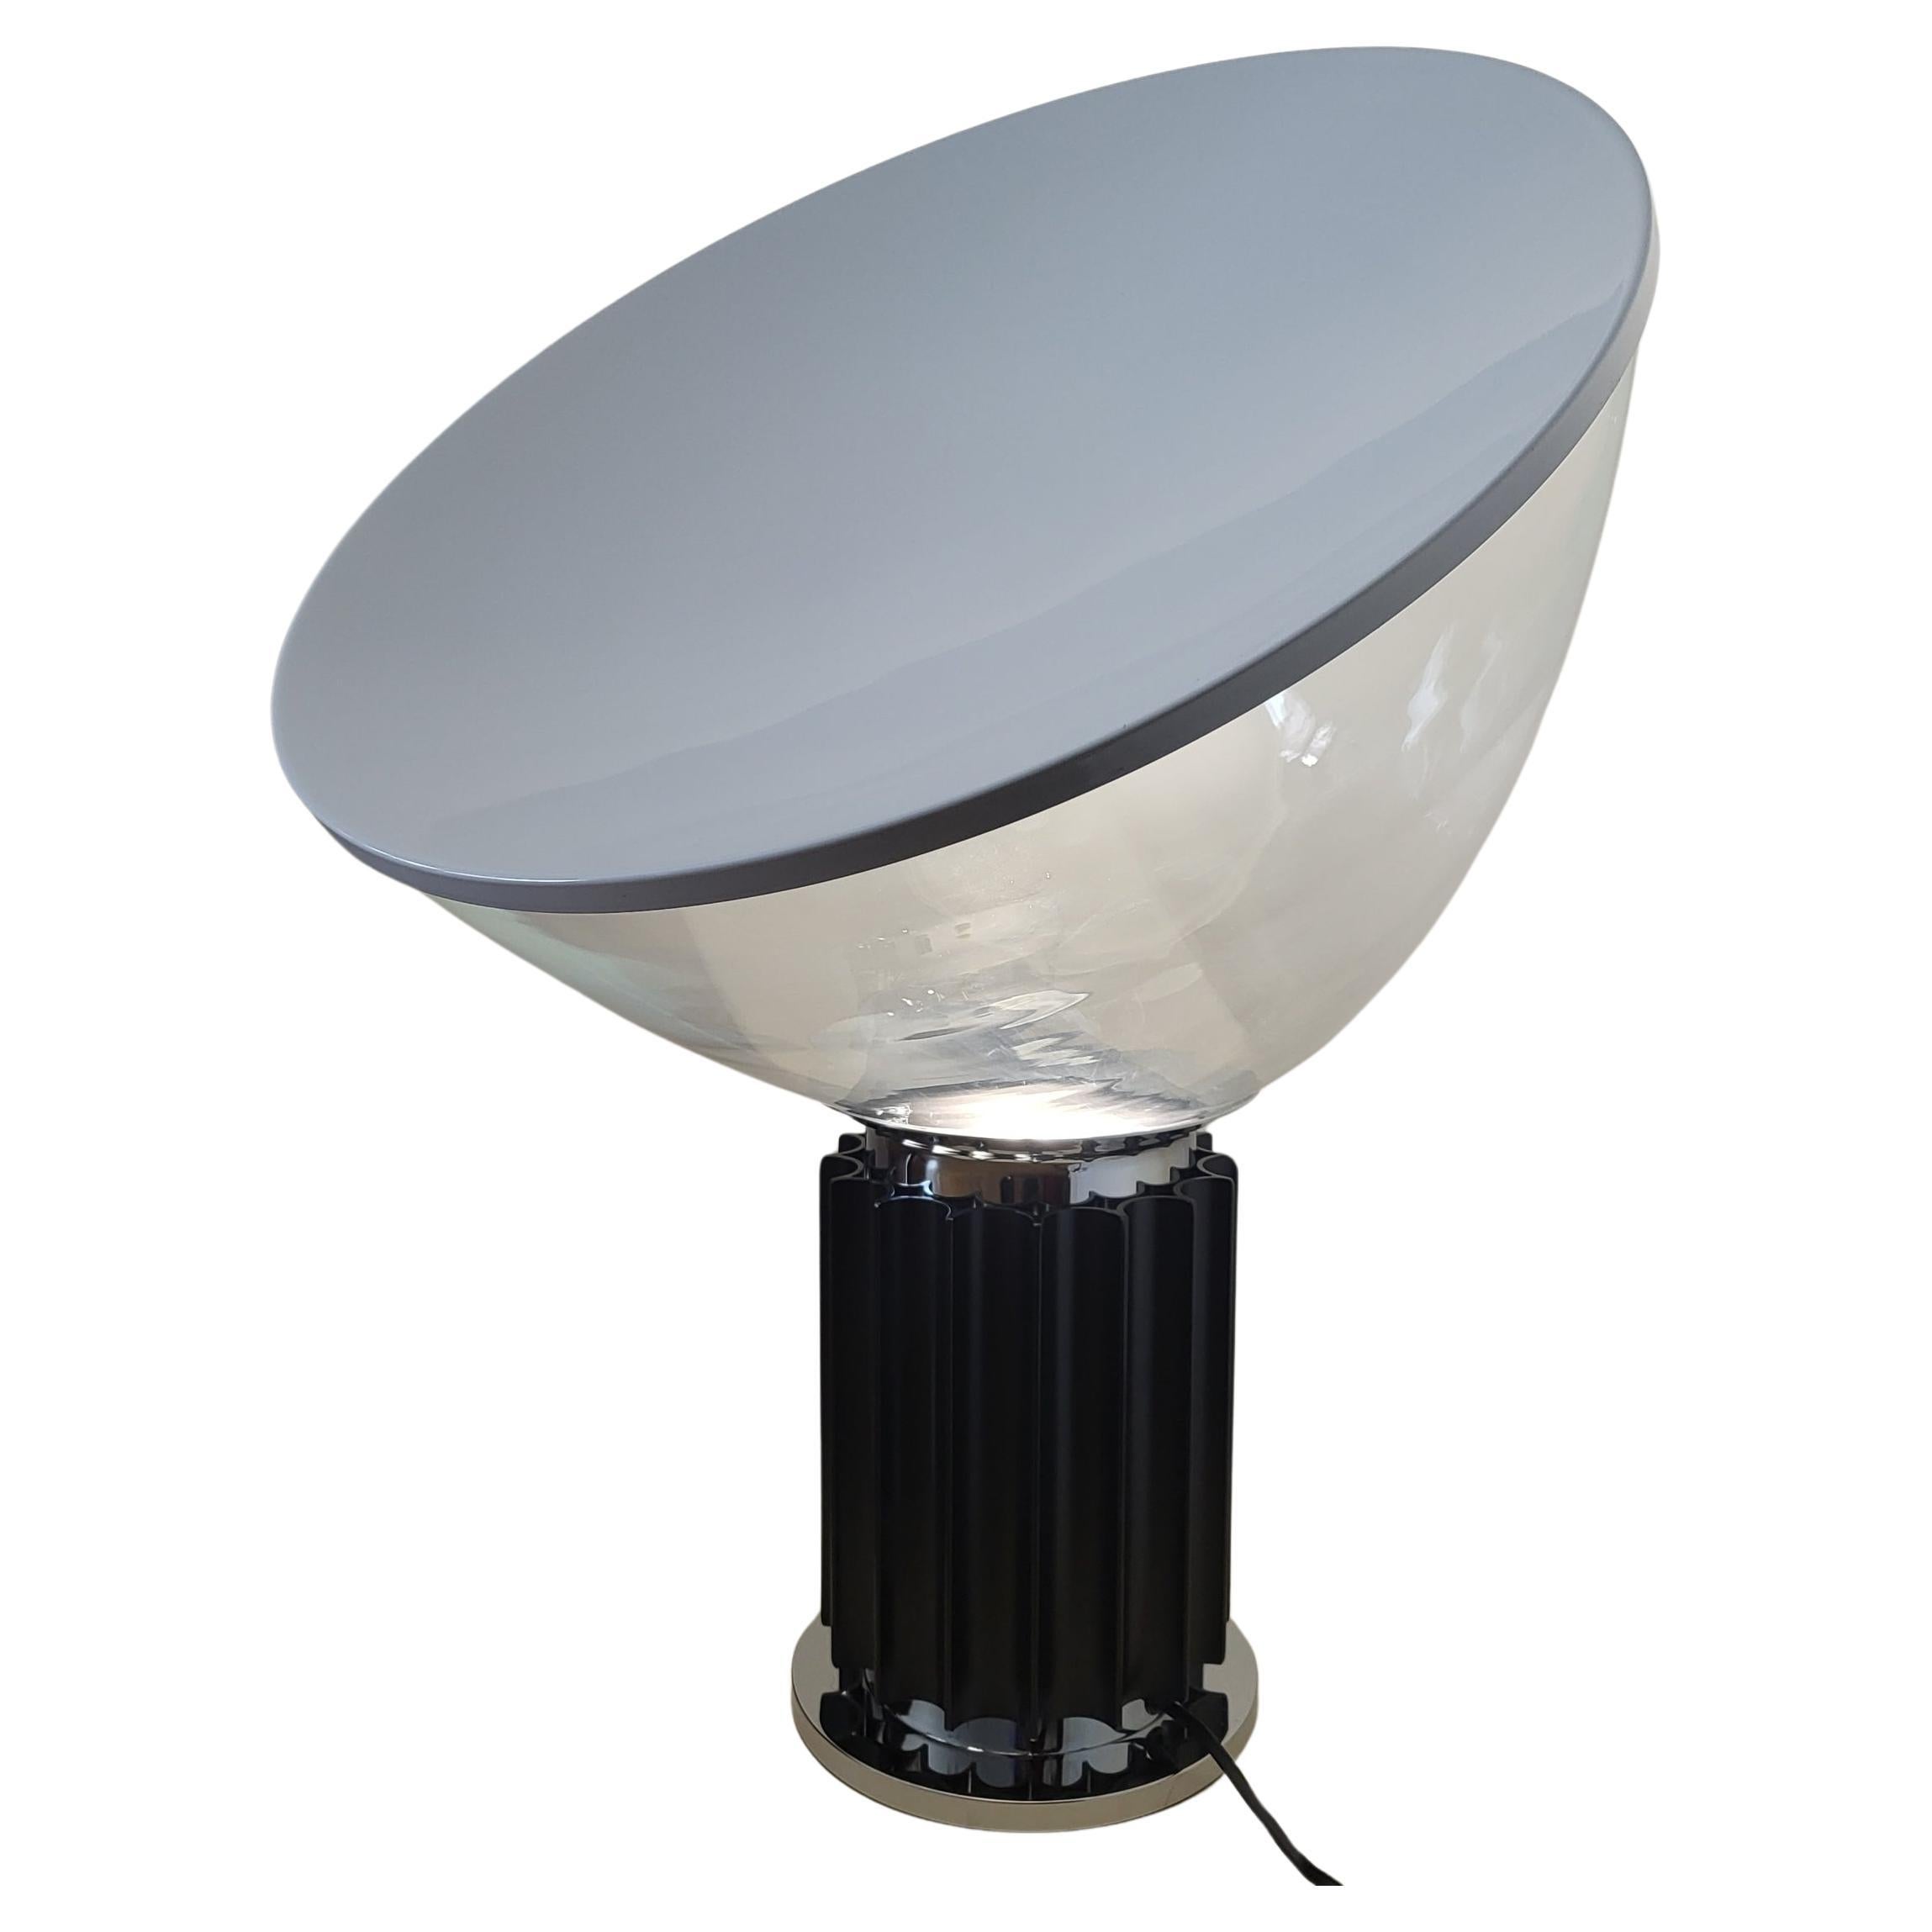 Lampe Taccia modèle XXL le plus grand. 
Design/One par Achille et Pier Giacomo Castiglioni , 1962
 Editée par FLOS Lampe de table à lumière indirecte et réfléchie. 
Réflecteur en aluminium peint blanc laqué sur la face externe et blanc mat sur la